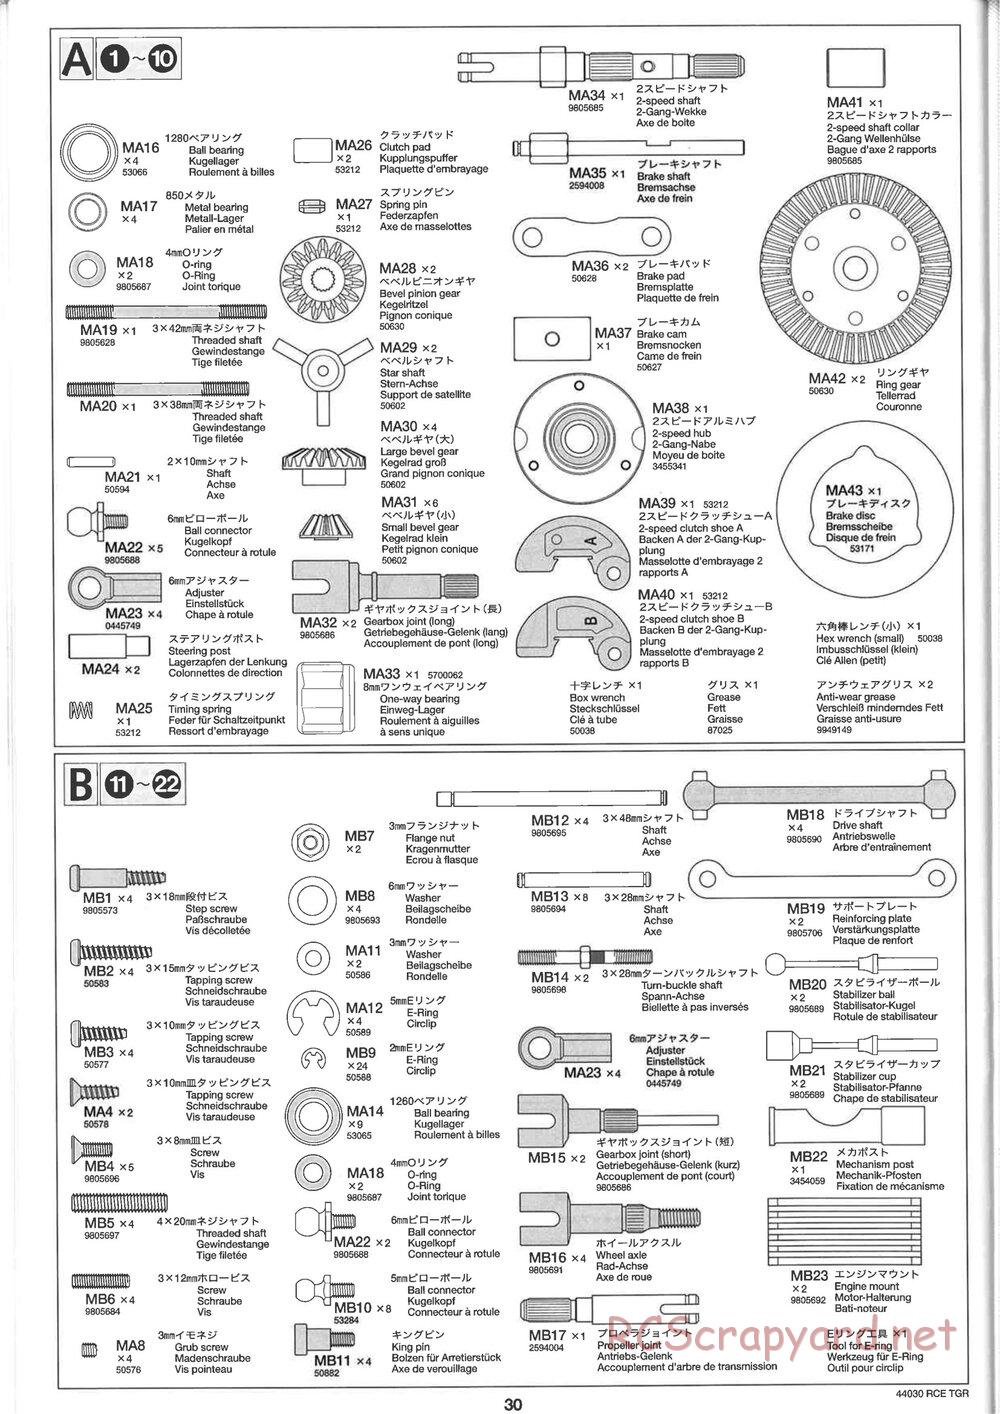 Tamiya - TGR Chassis - Manual - Page 30